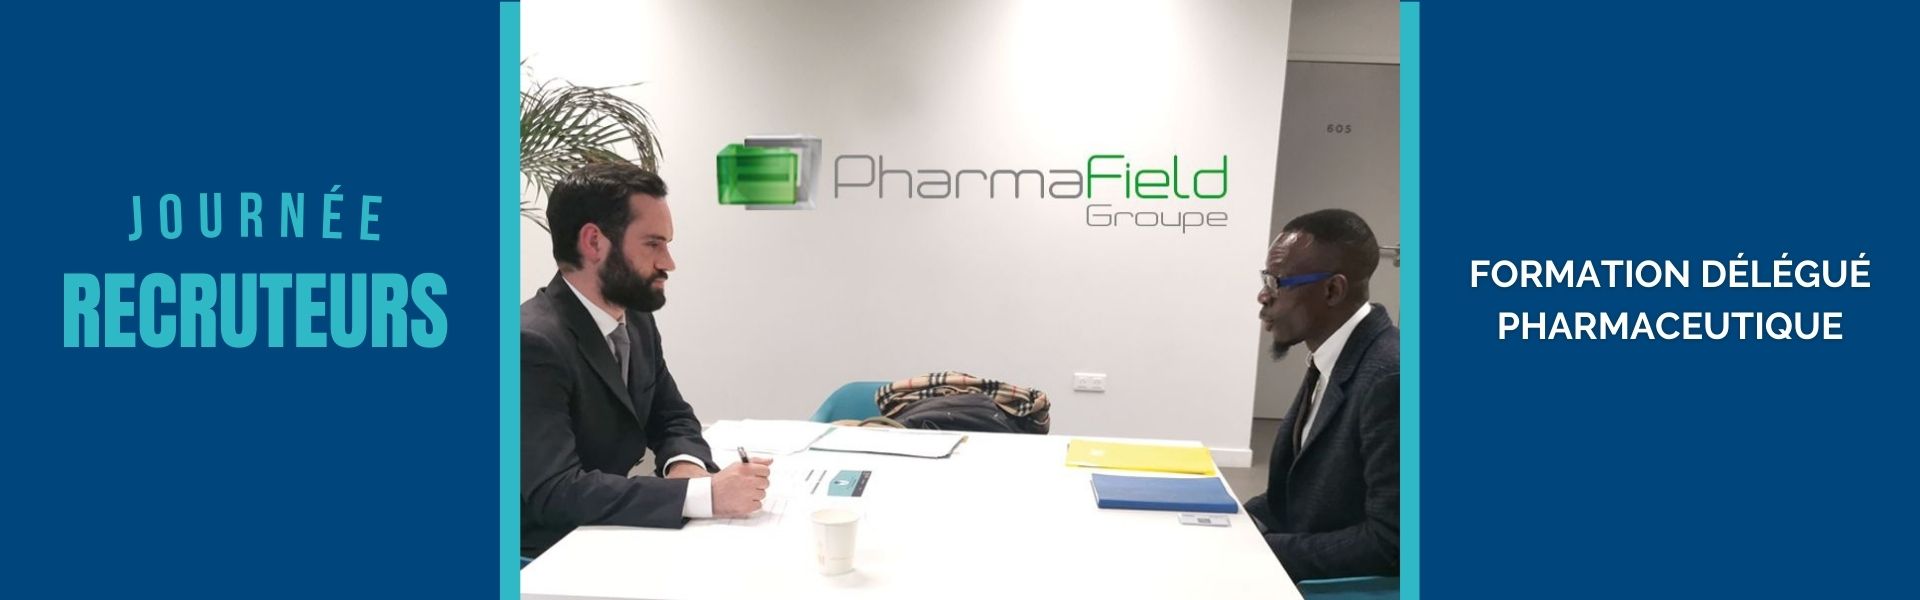 Article Pharmafield Groupe à la Journée Recruteur de la formation Délégué Pharmaceutique